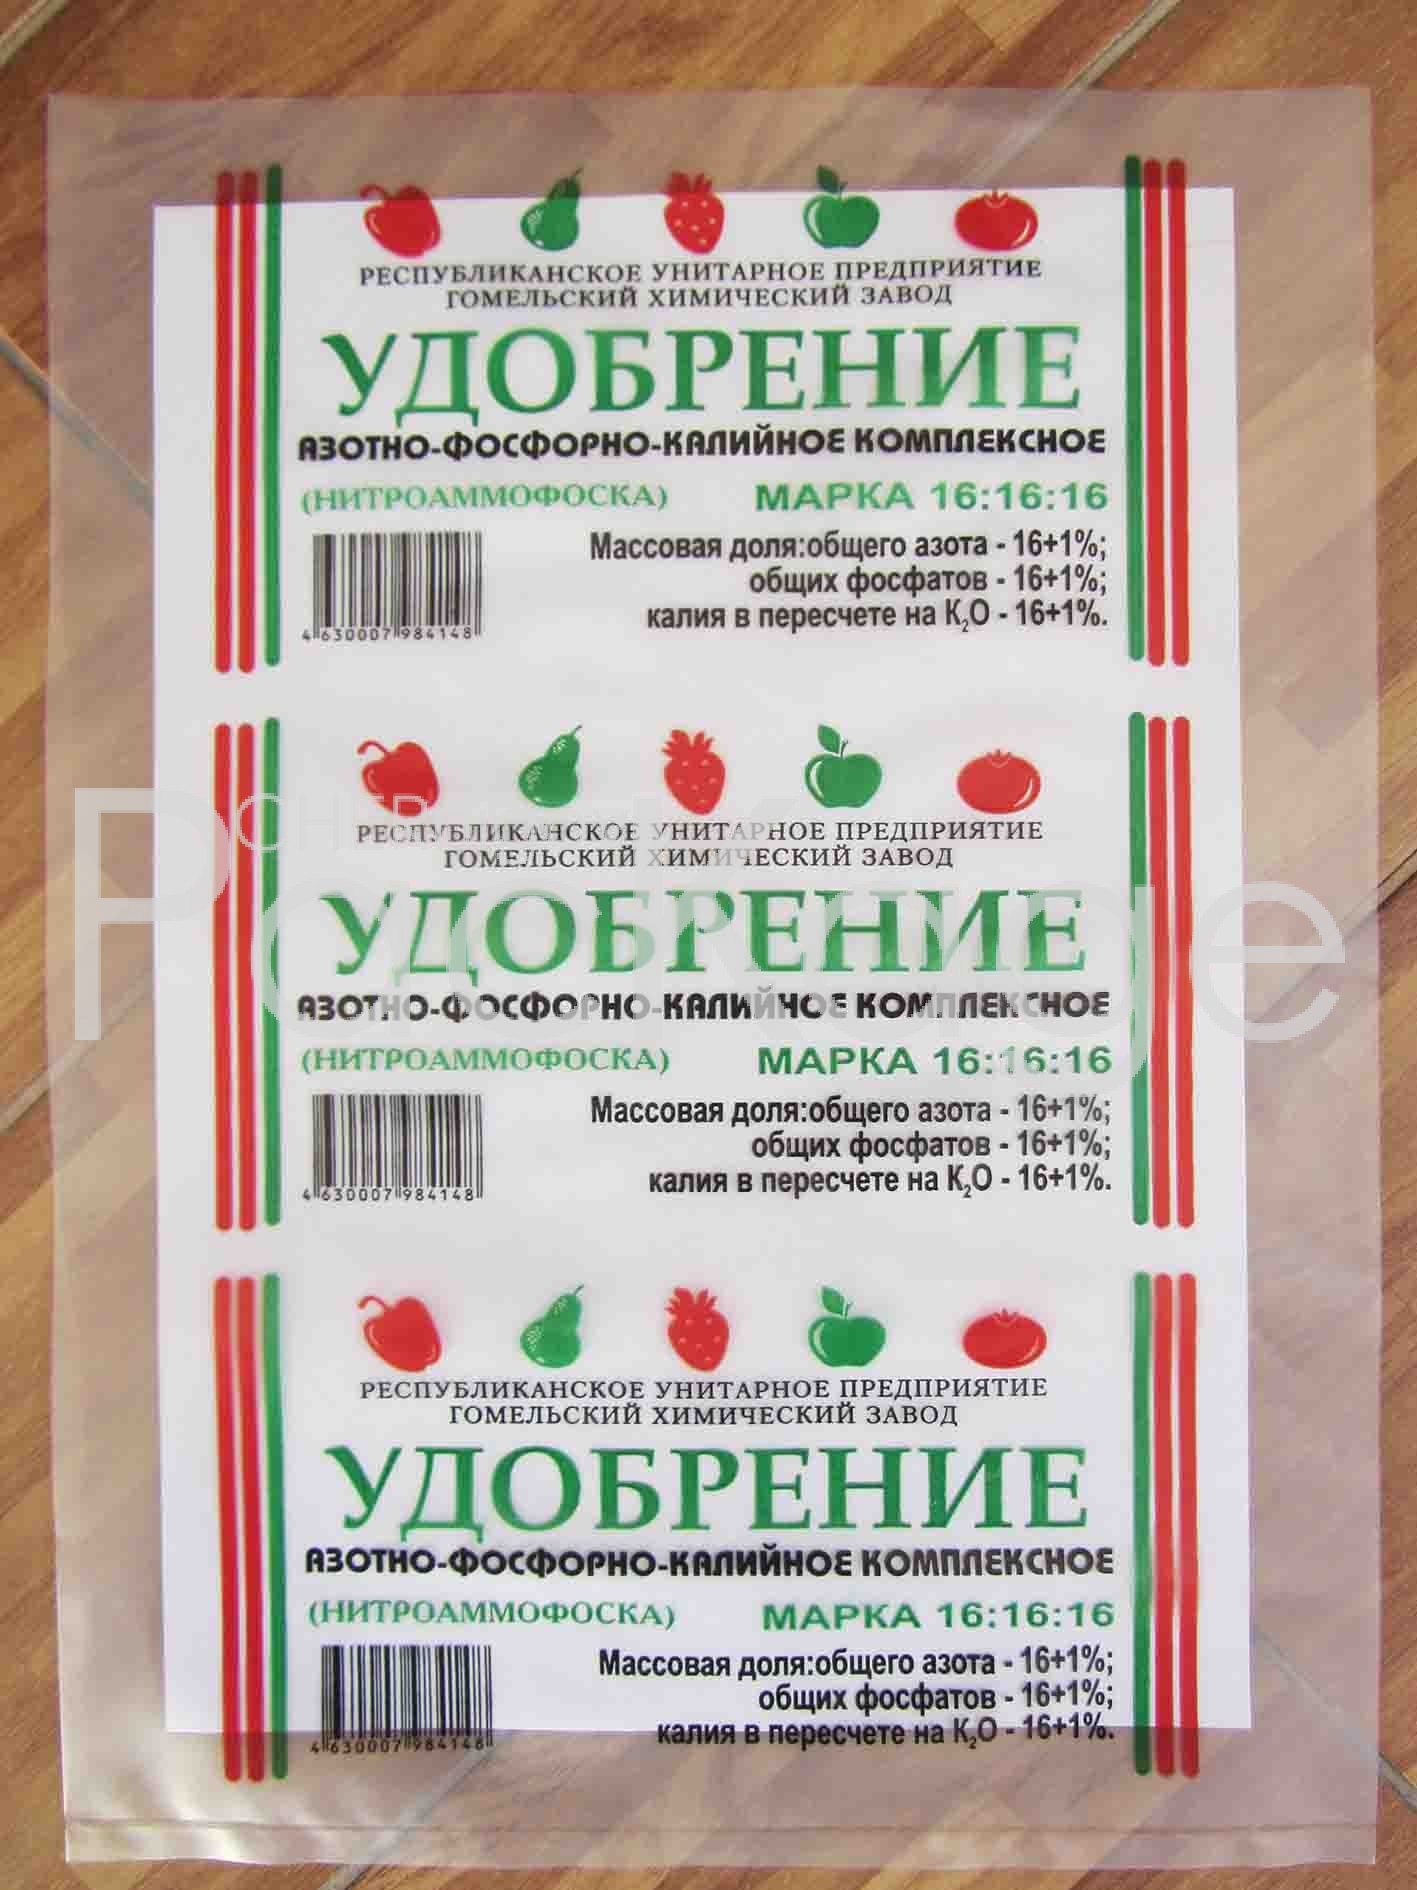 Производство упаковки Chernigov Package - Photo IMG_6368